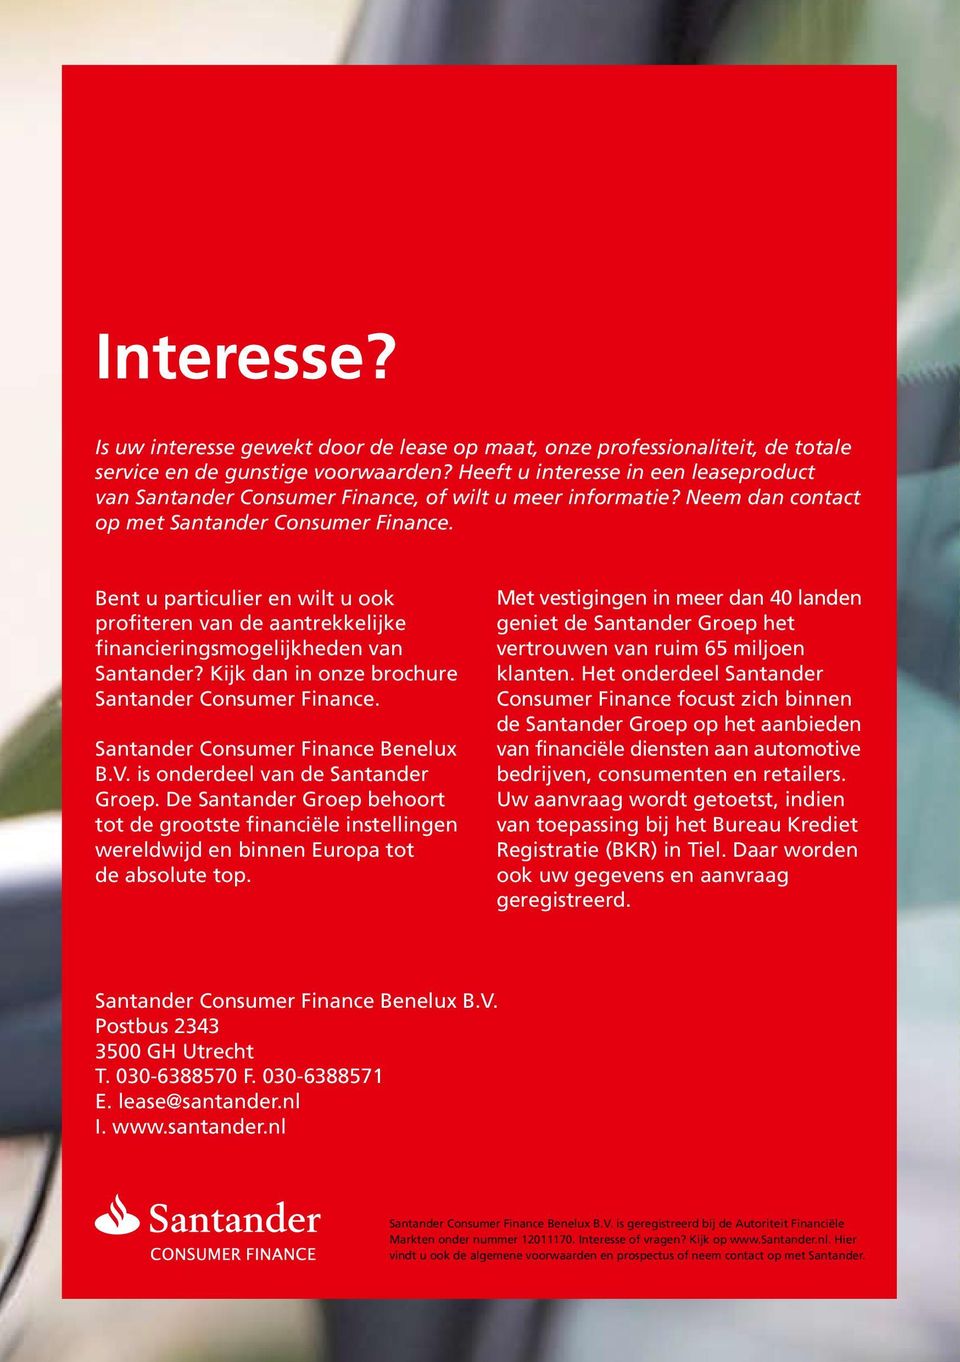 Bent u particulier en wilt u ook profiteren van de aantrekkelijke financieringsmogelijkheden van Santander? Kijk dan in onze brochure Santander Consumer Finance. Santander Consumer Finance Benelux B.